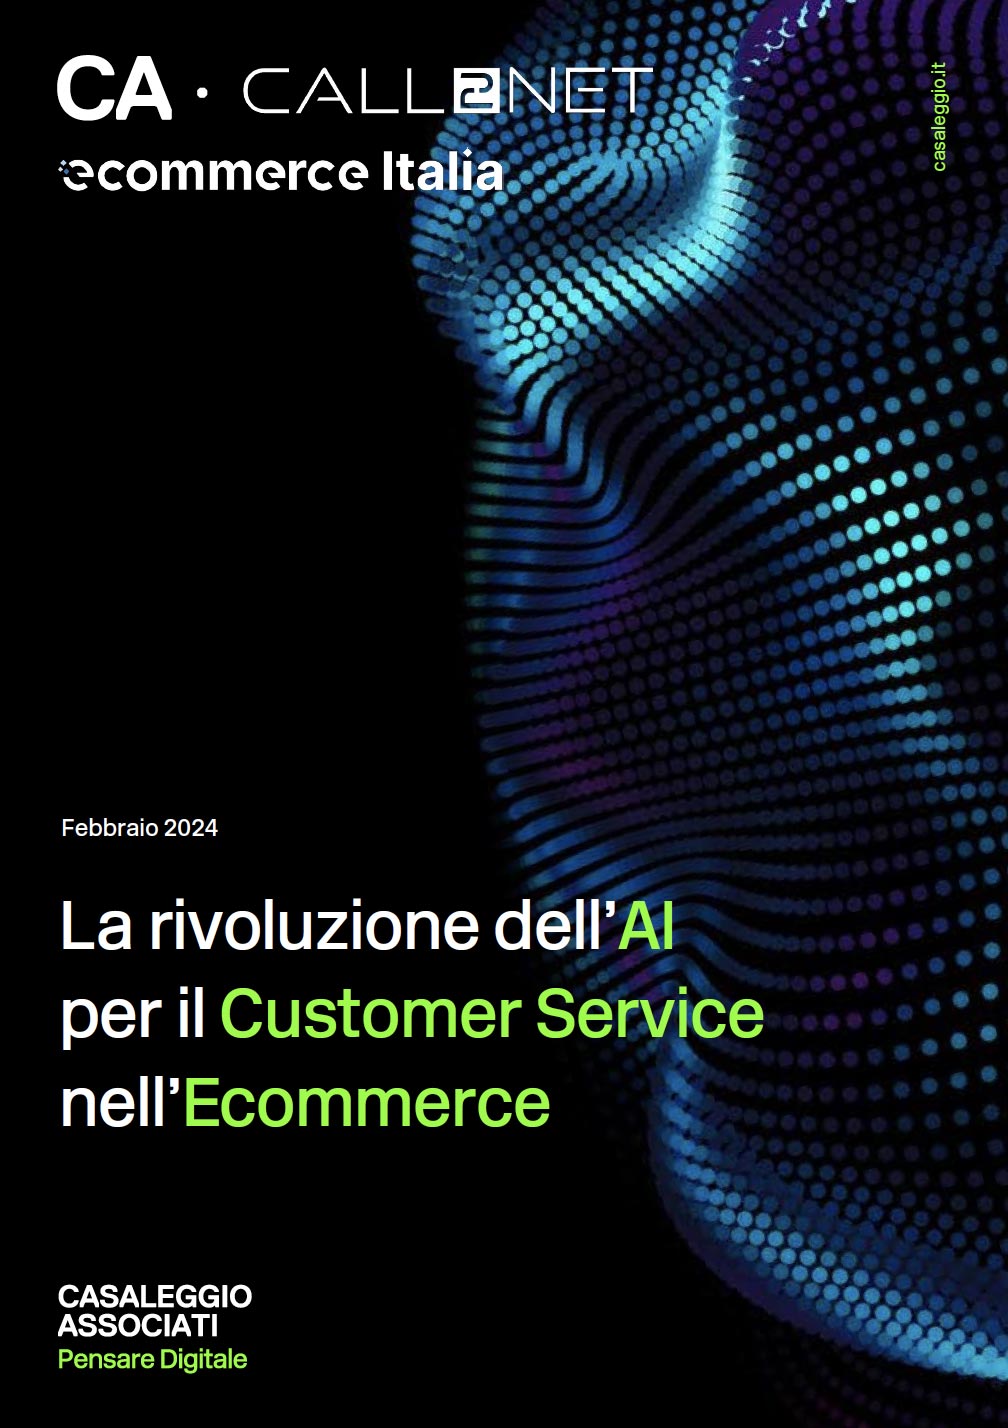 La rivoluzione dell’AI per il Customer Service nell’Ecommerce - Report